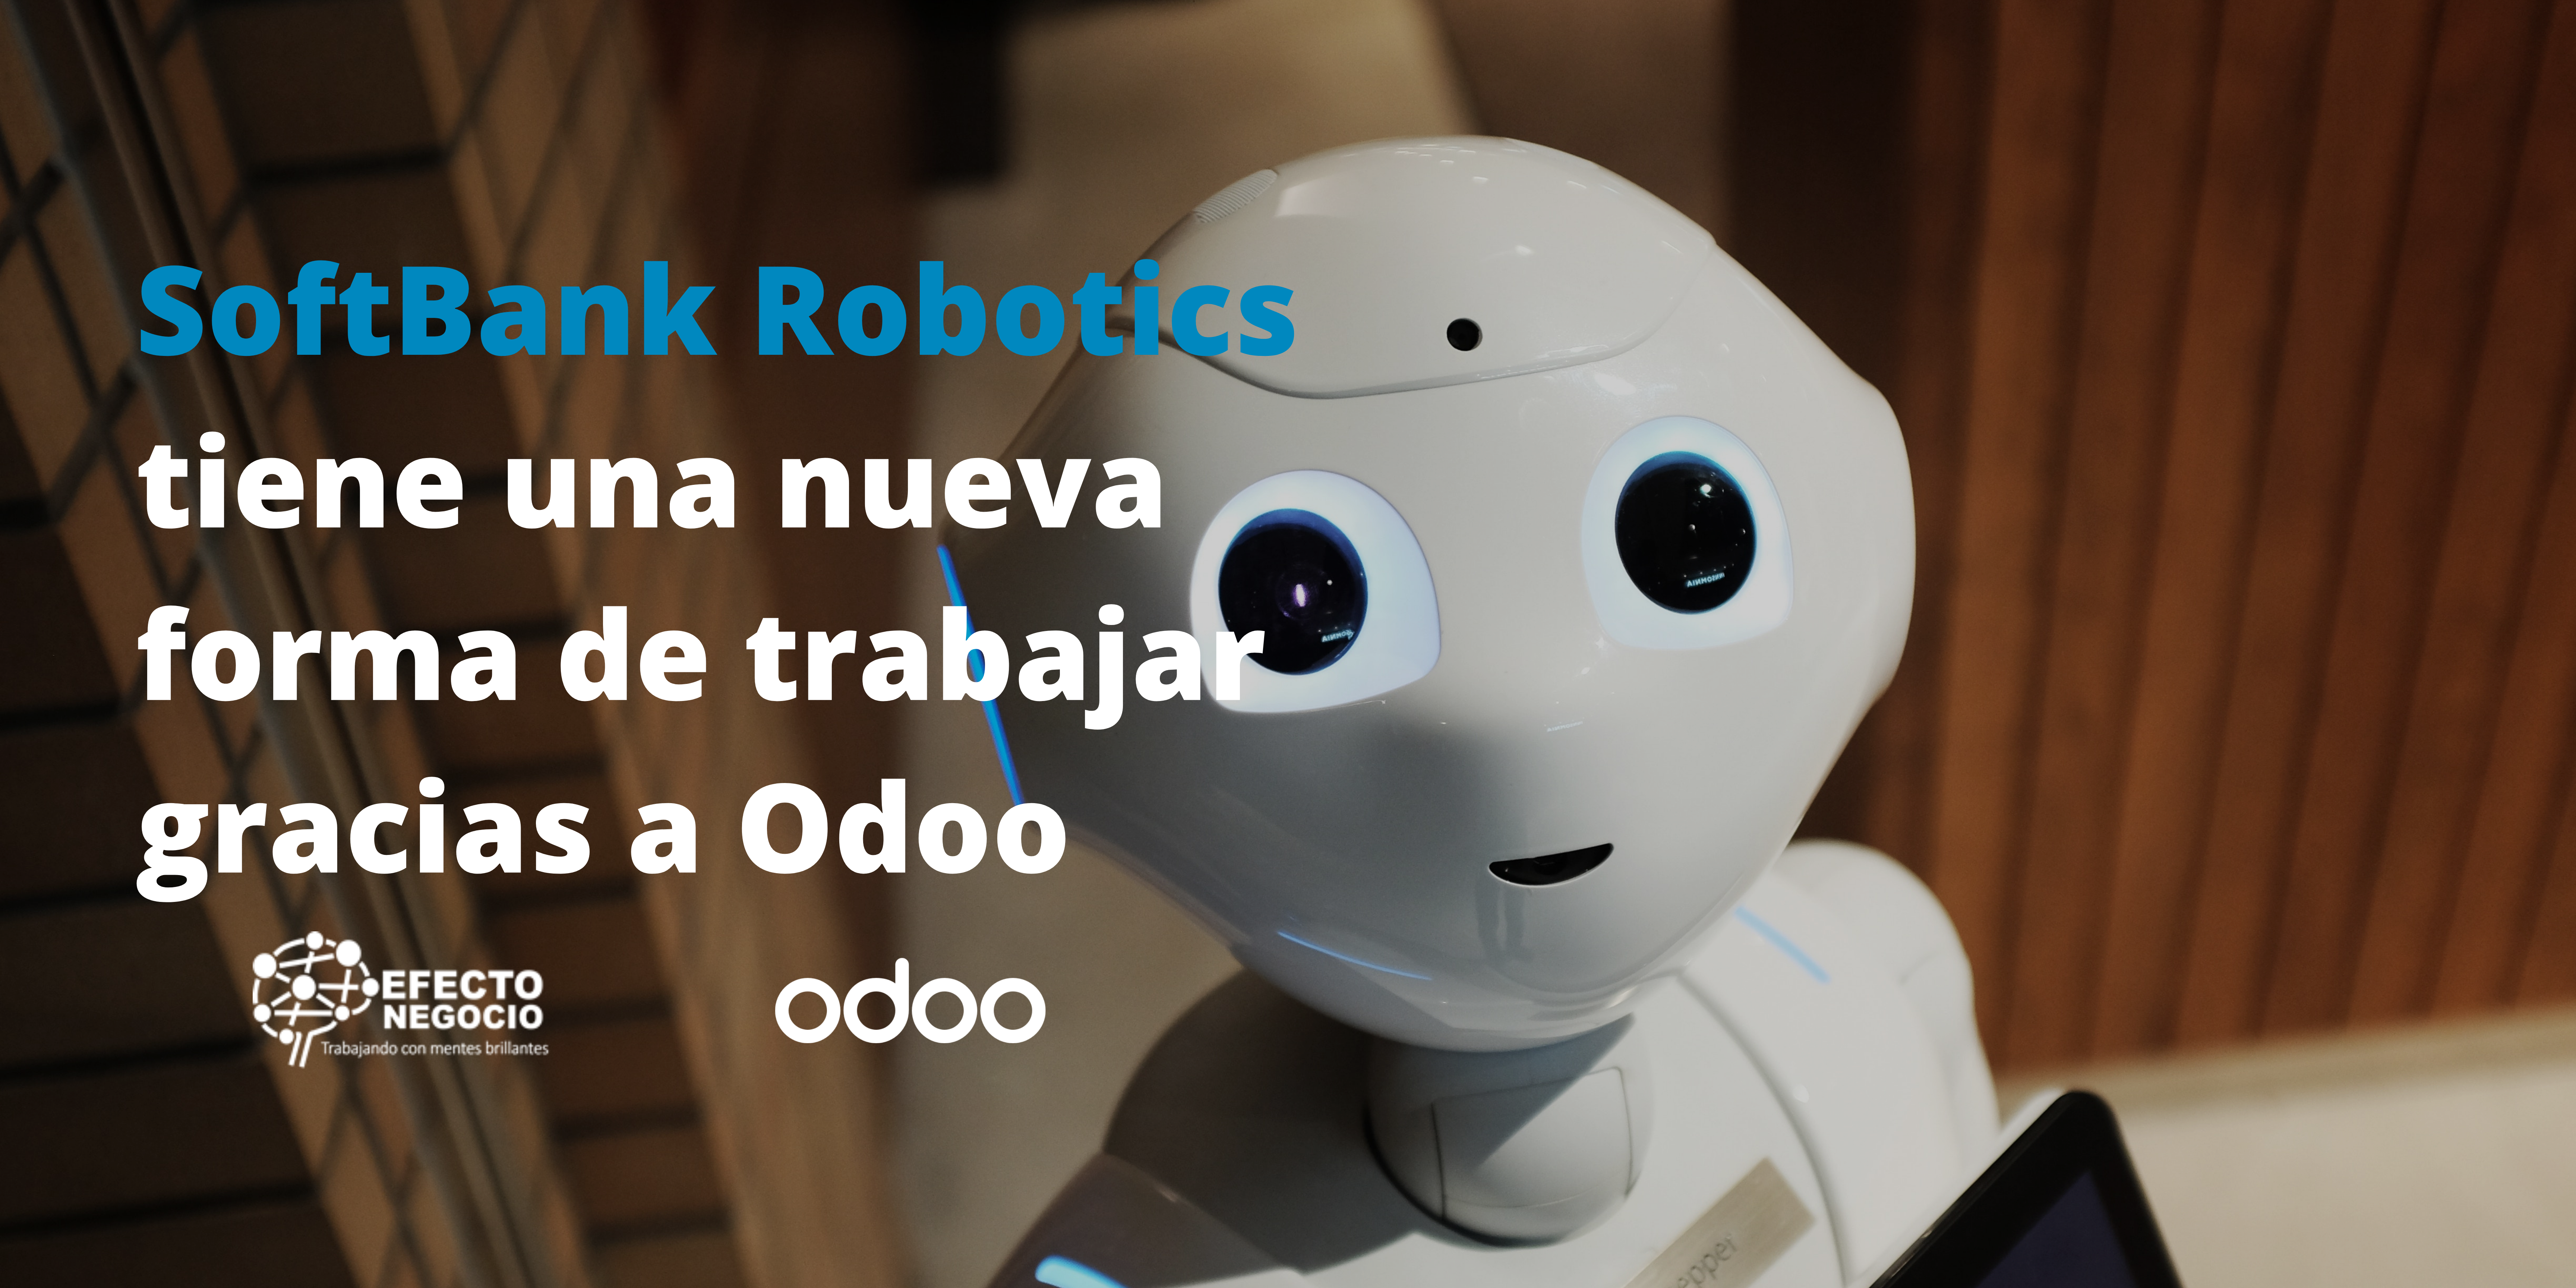 SoftBank Robotics tiene una nueva forma de trabajar gracias a Odoo